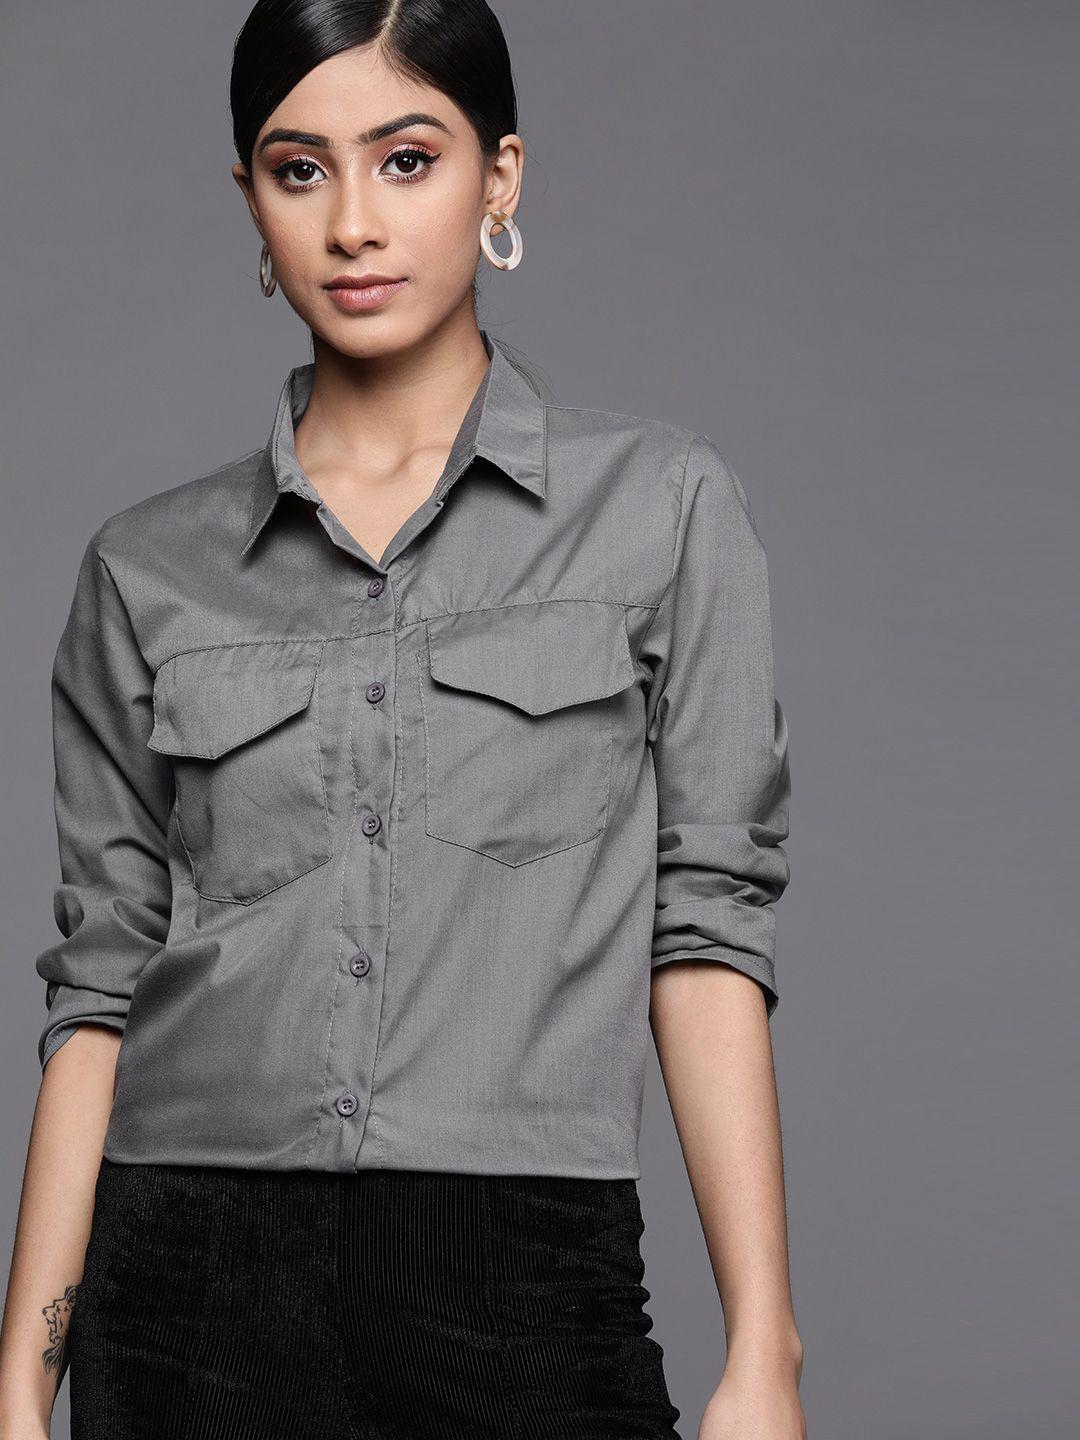 jc mode women grey solid casual shirt